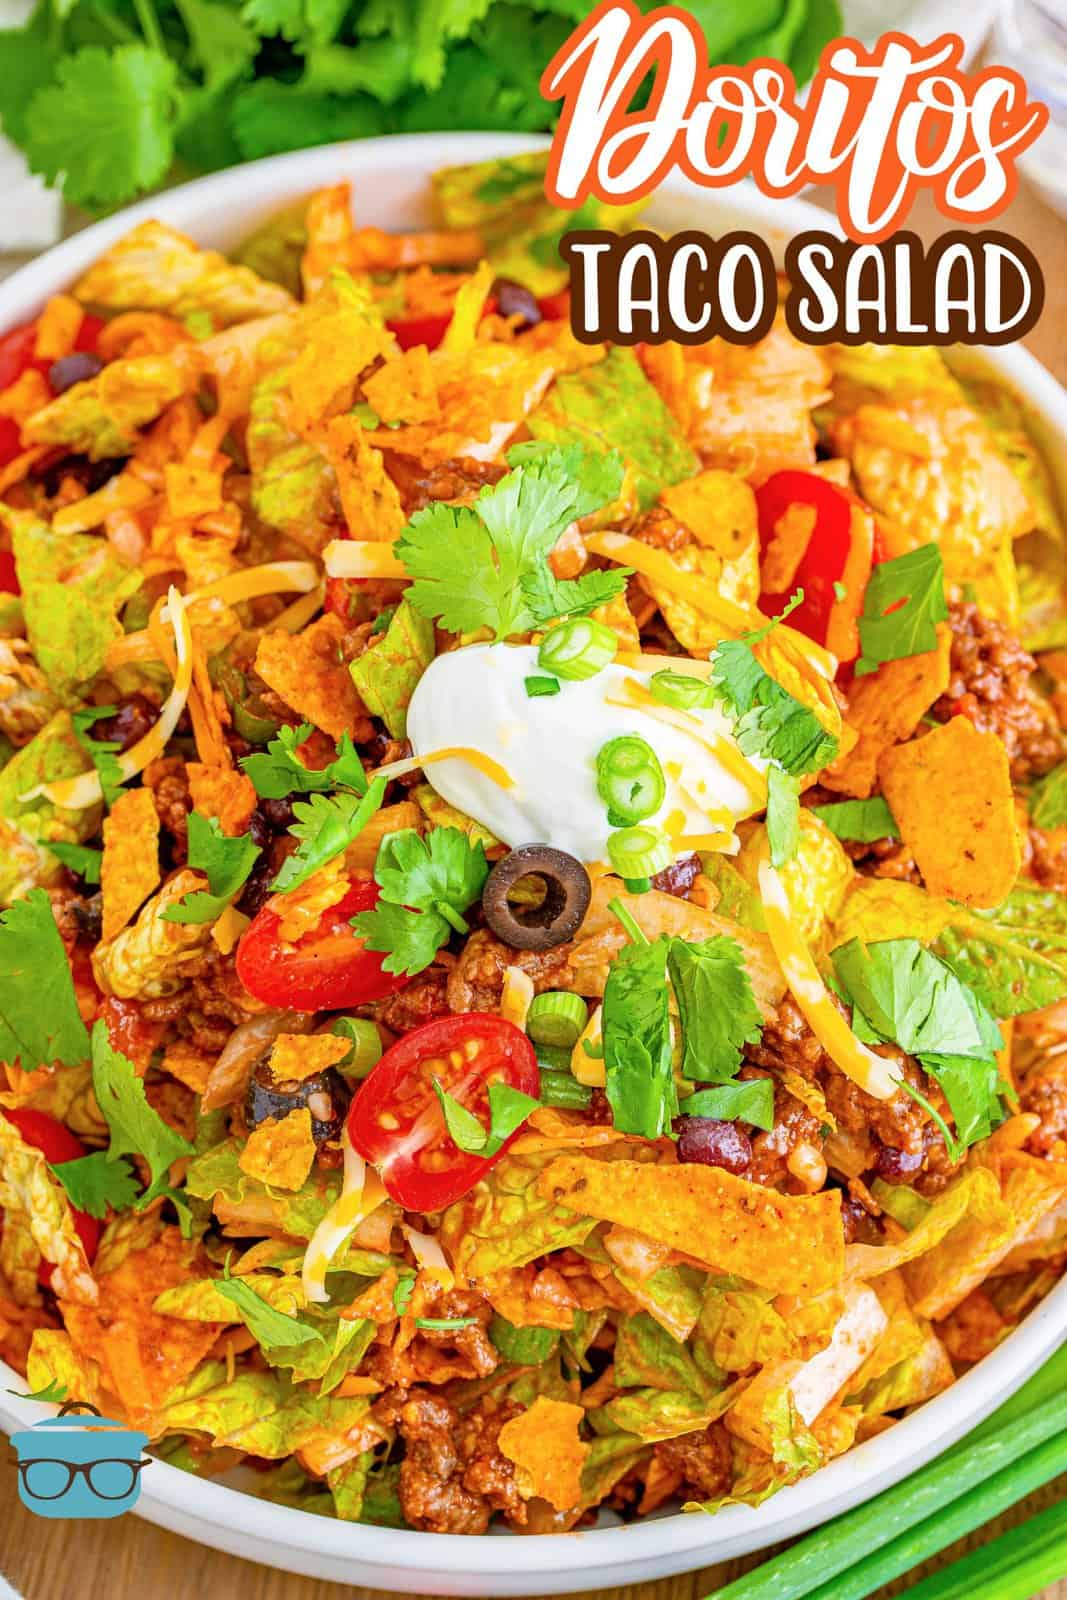 Large bowl of Doritos Taco Salad.